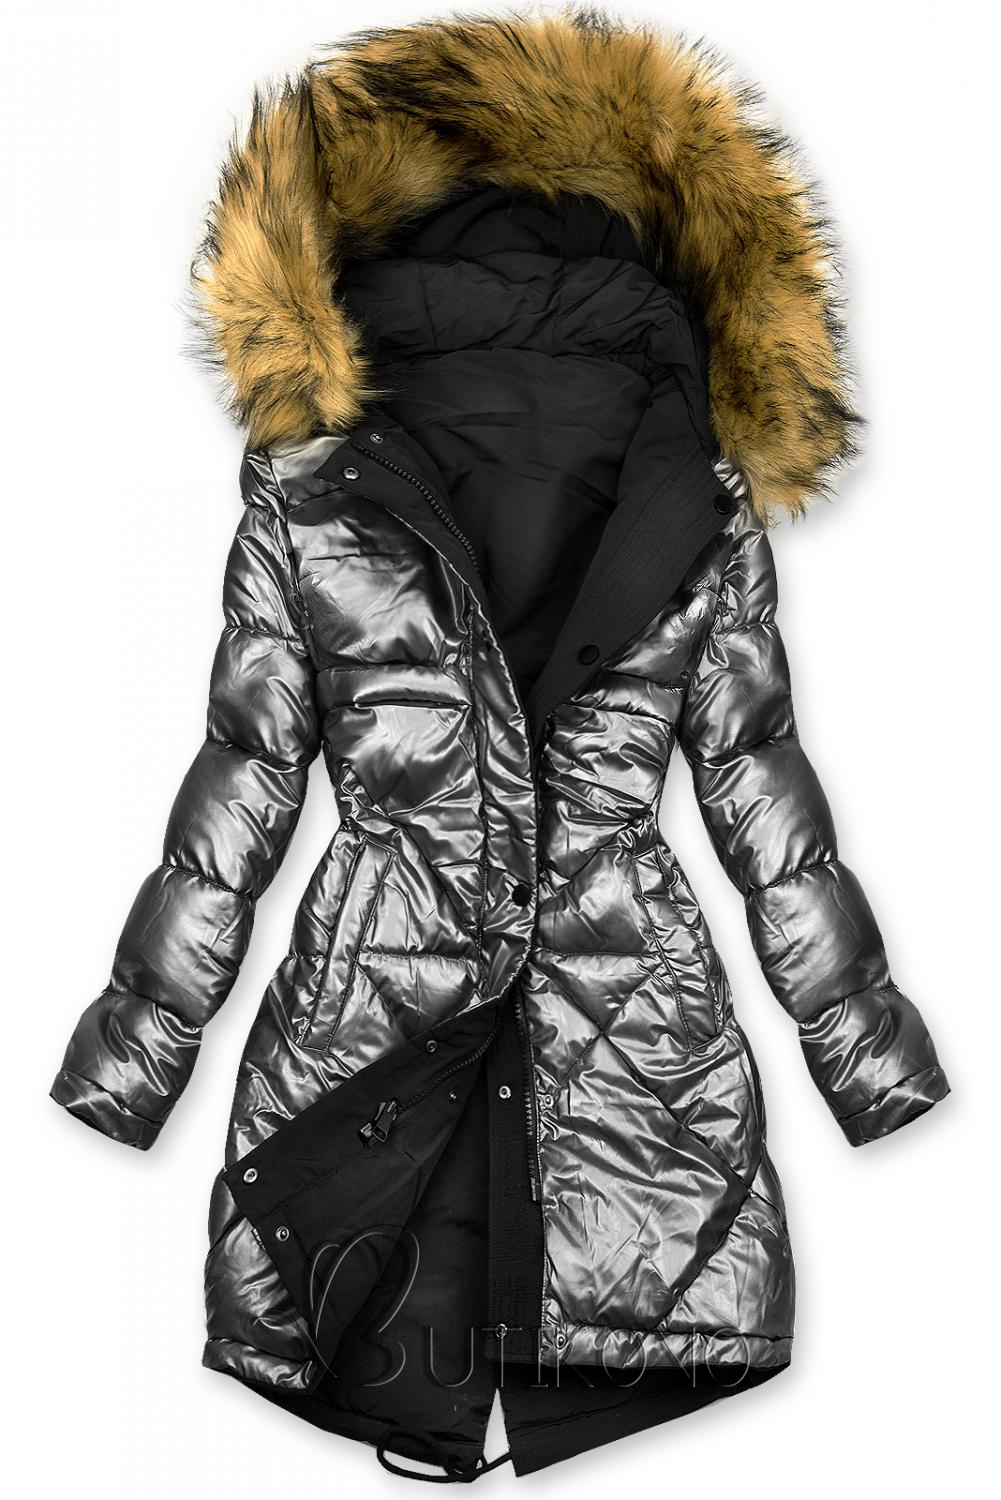 Černo-stříbrná oboustranná zimní bunda